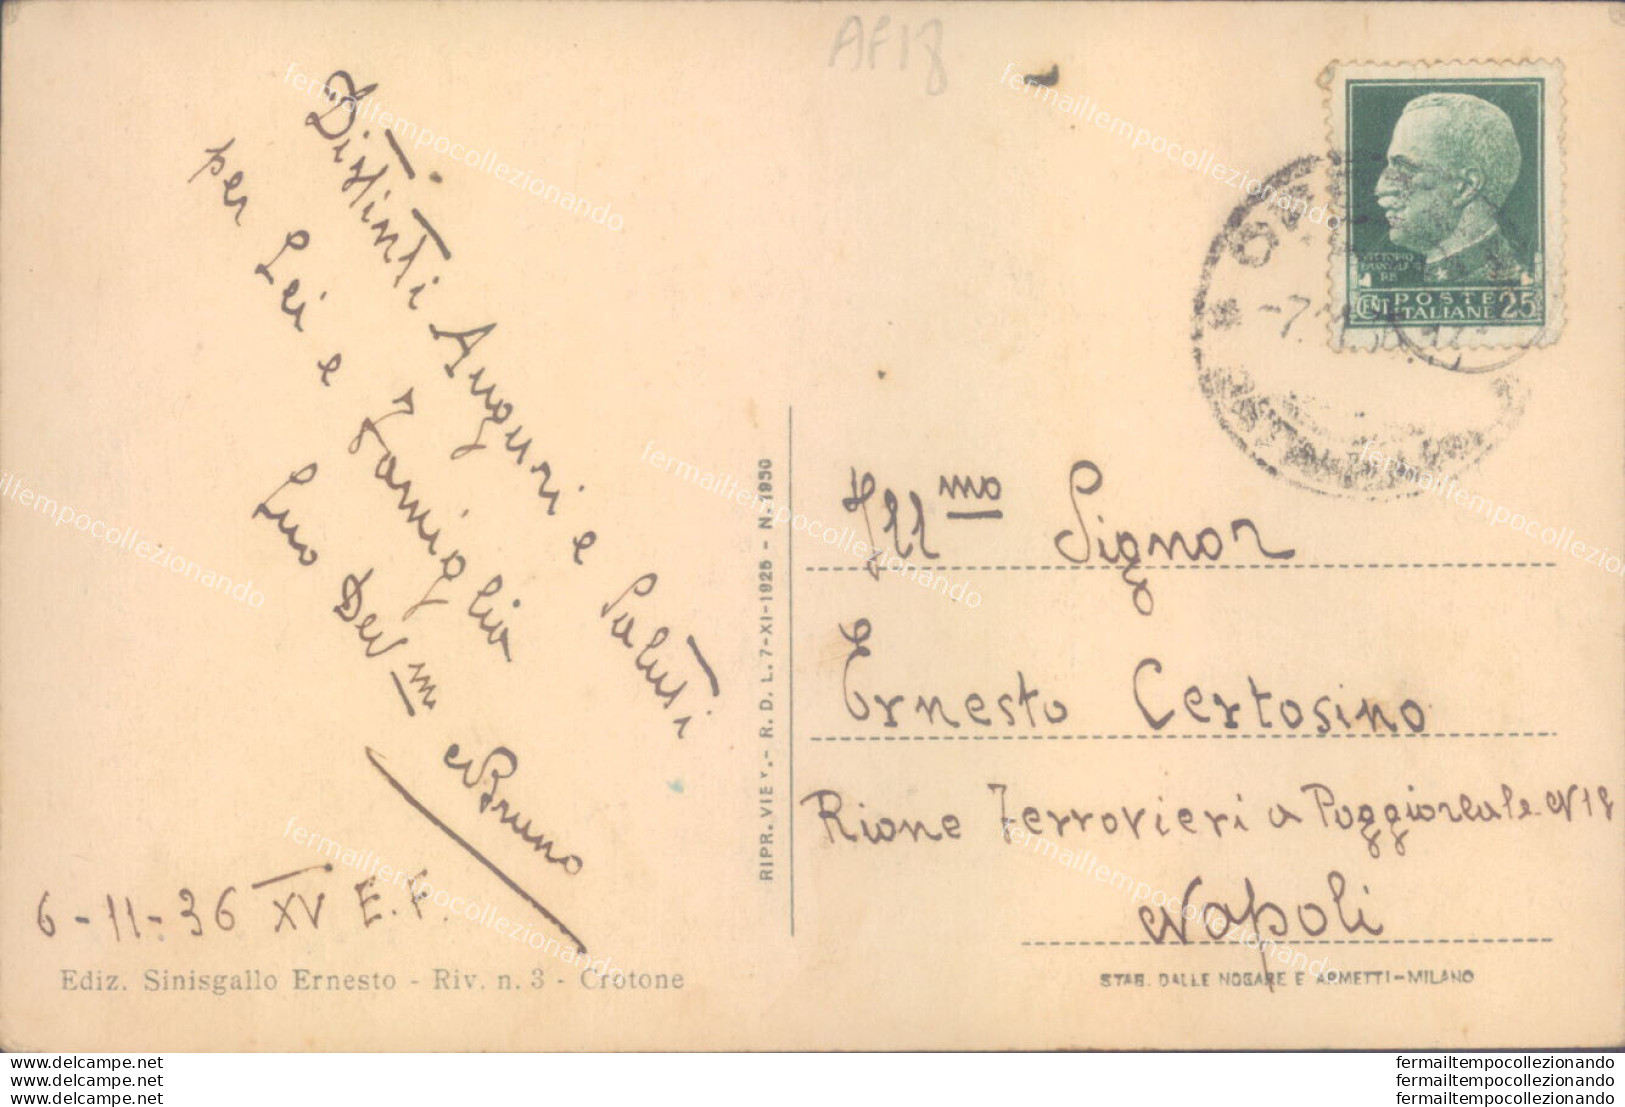 Ag18 Cartolina Crotone Citta' Montecatini 1936 - Crotone